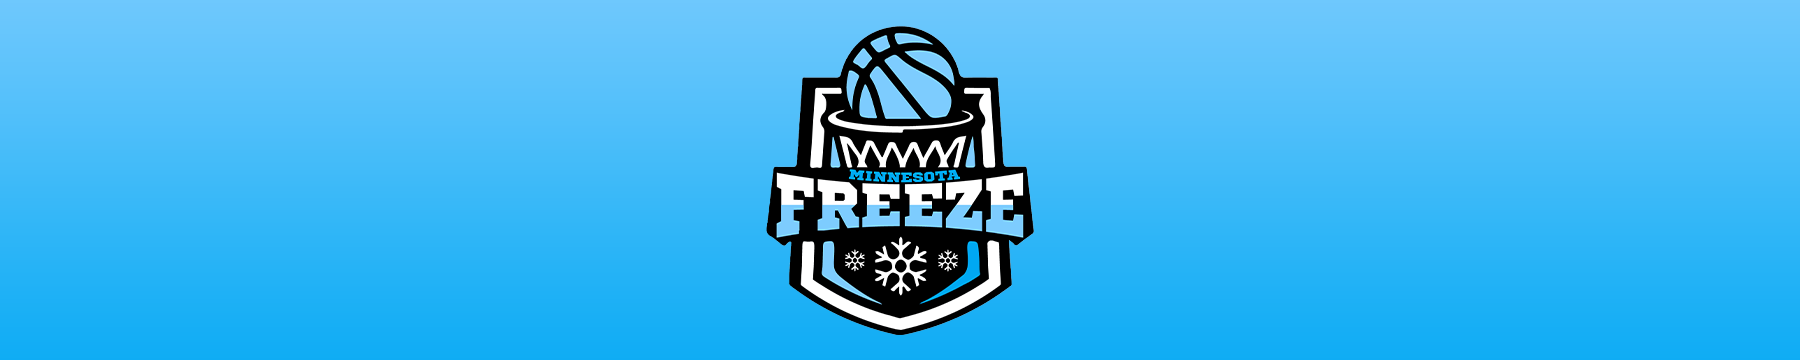 FreezeBasketball